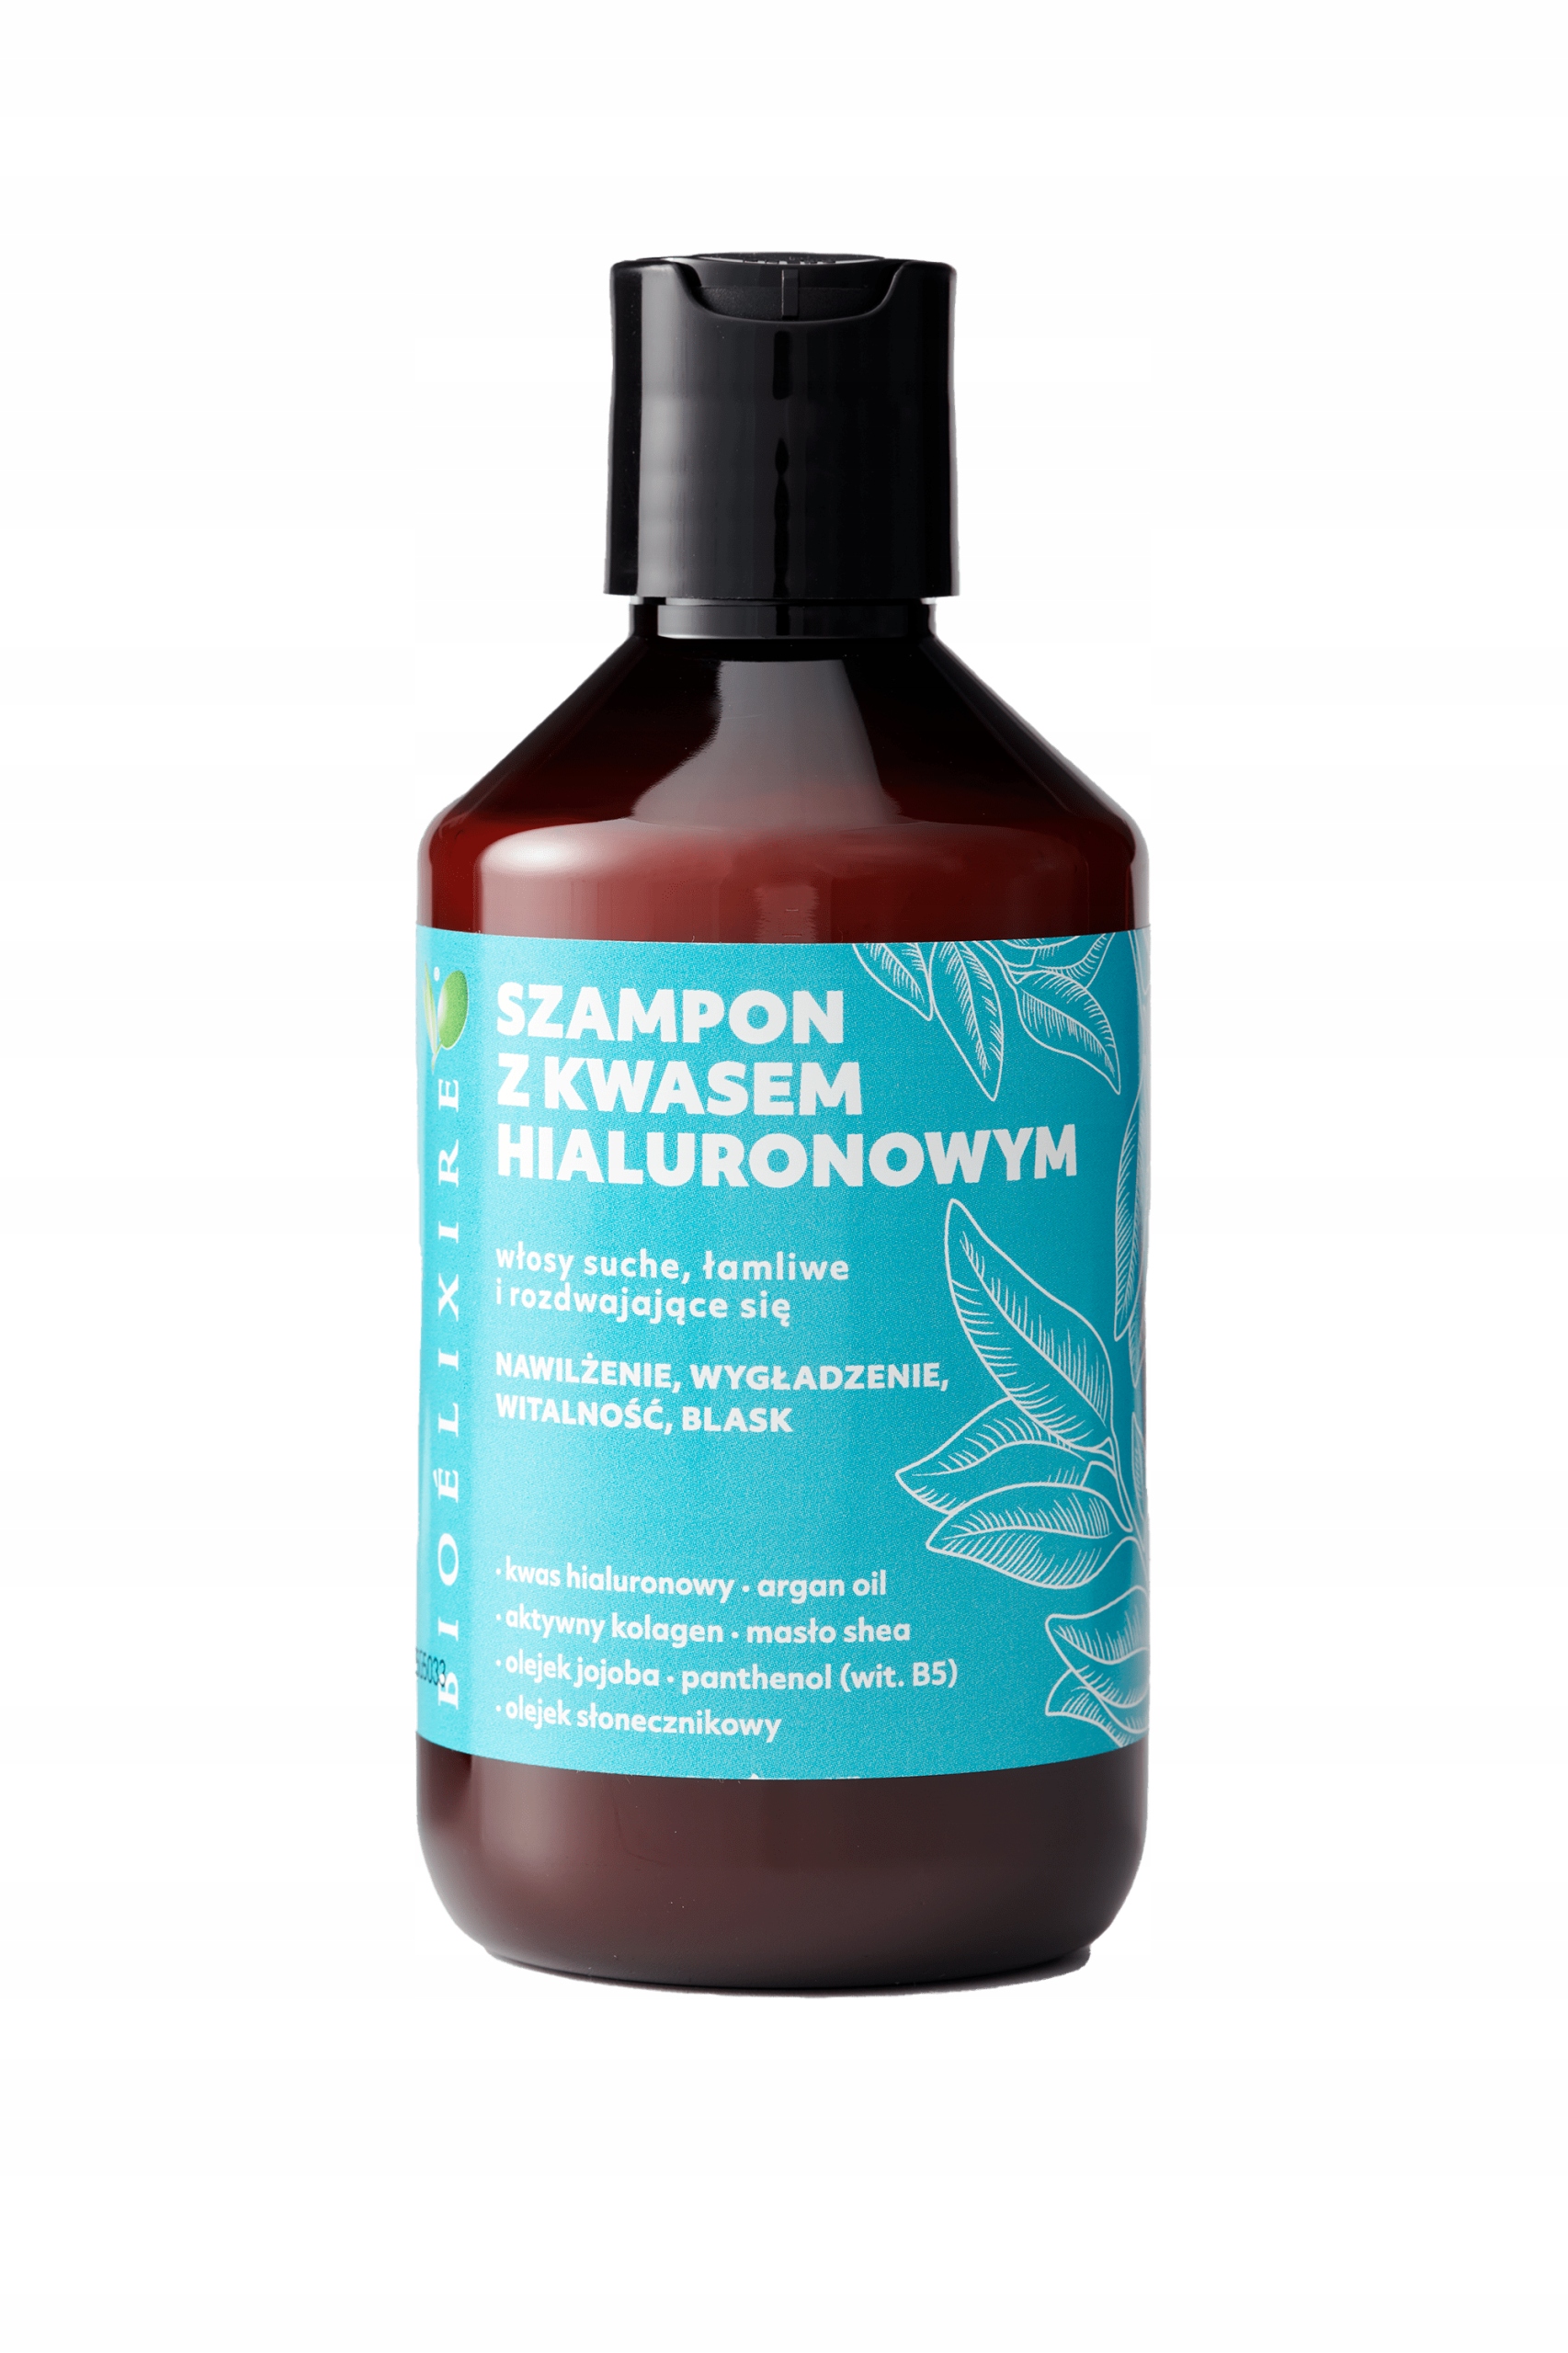 szampon do wlosow z kwasem hialuronowym polecany